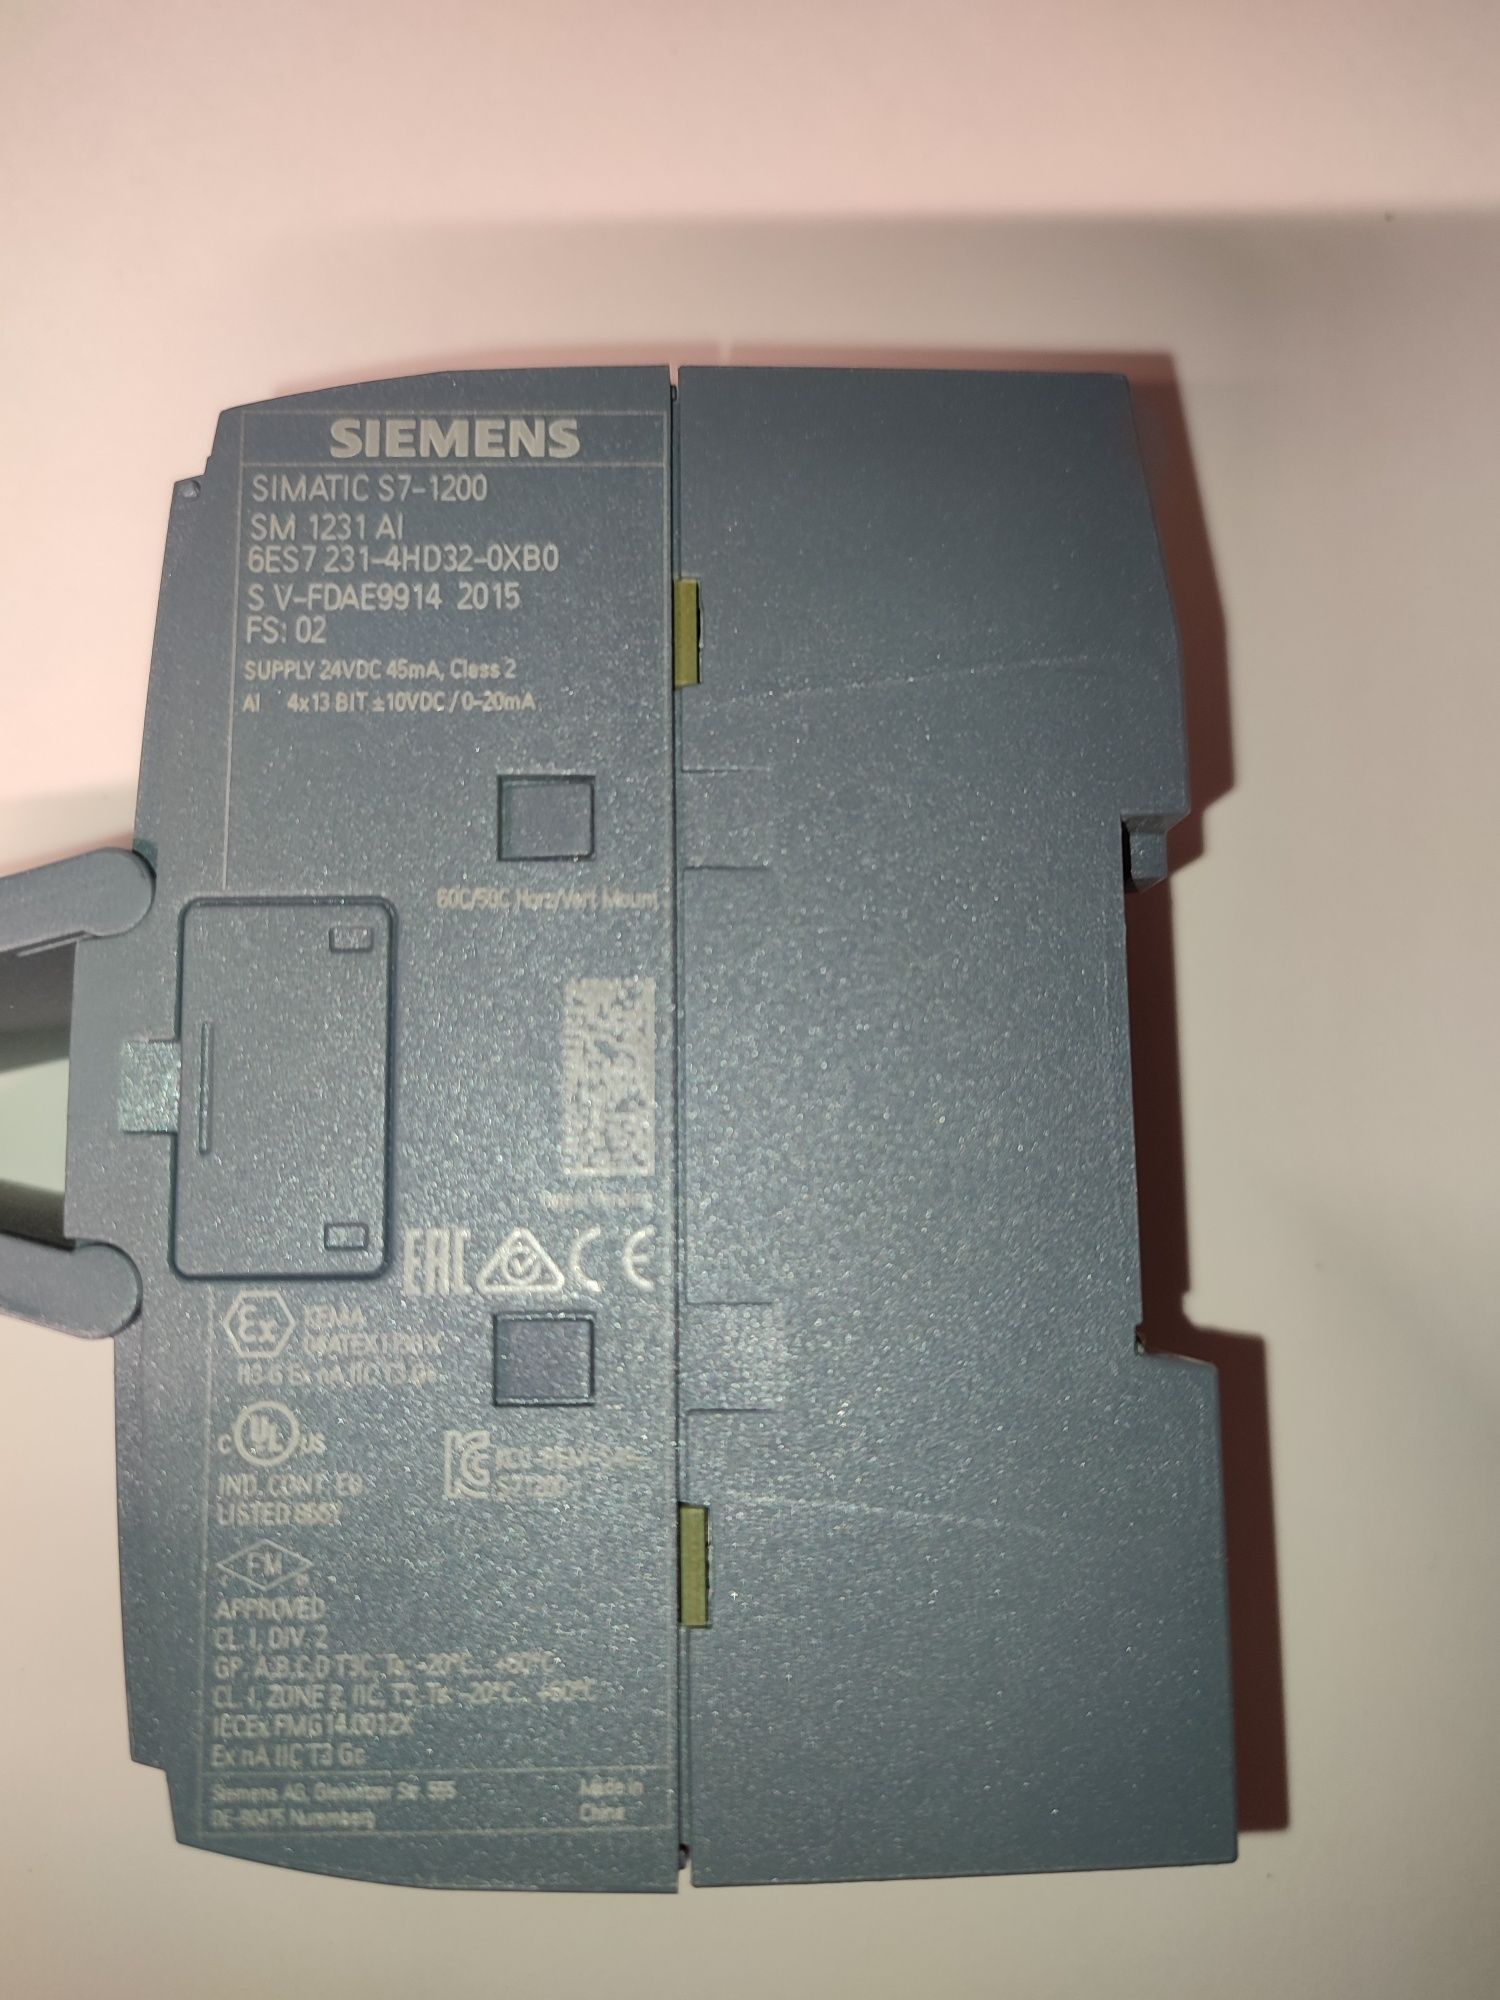 Moduł wejść analogowych Siemens SM 1231 Simatic S7-1200